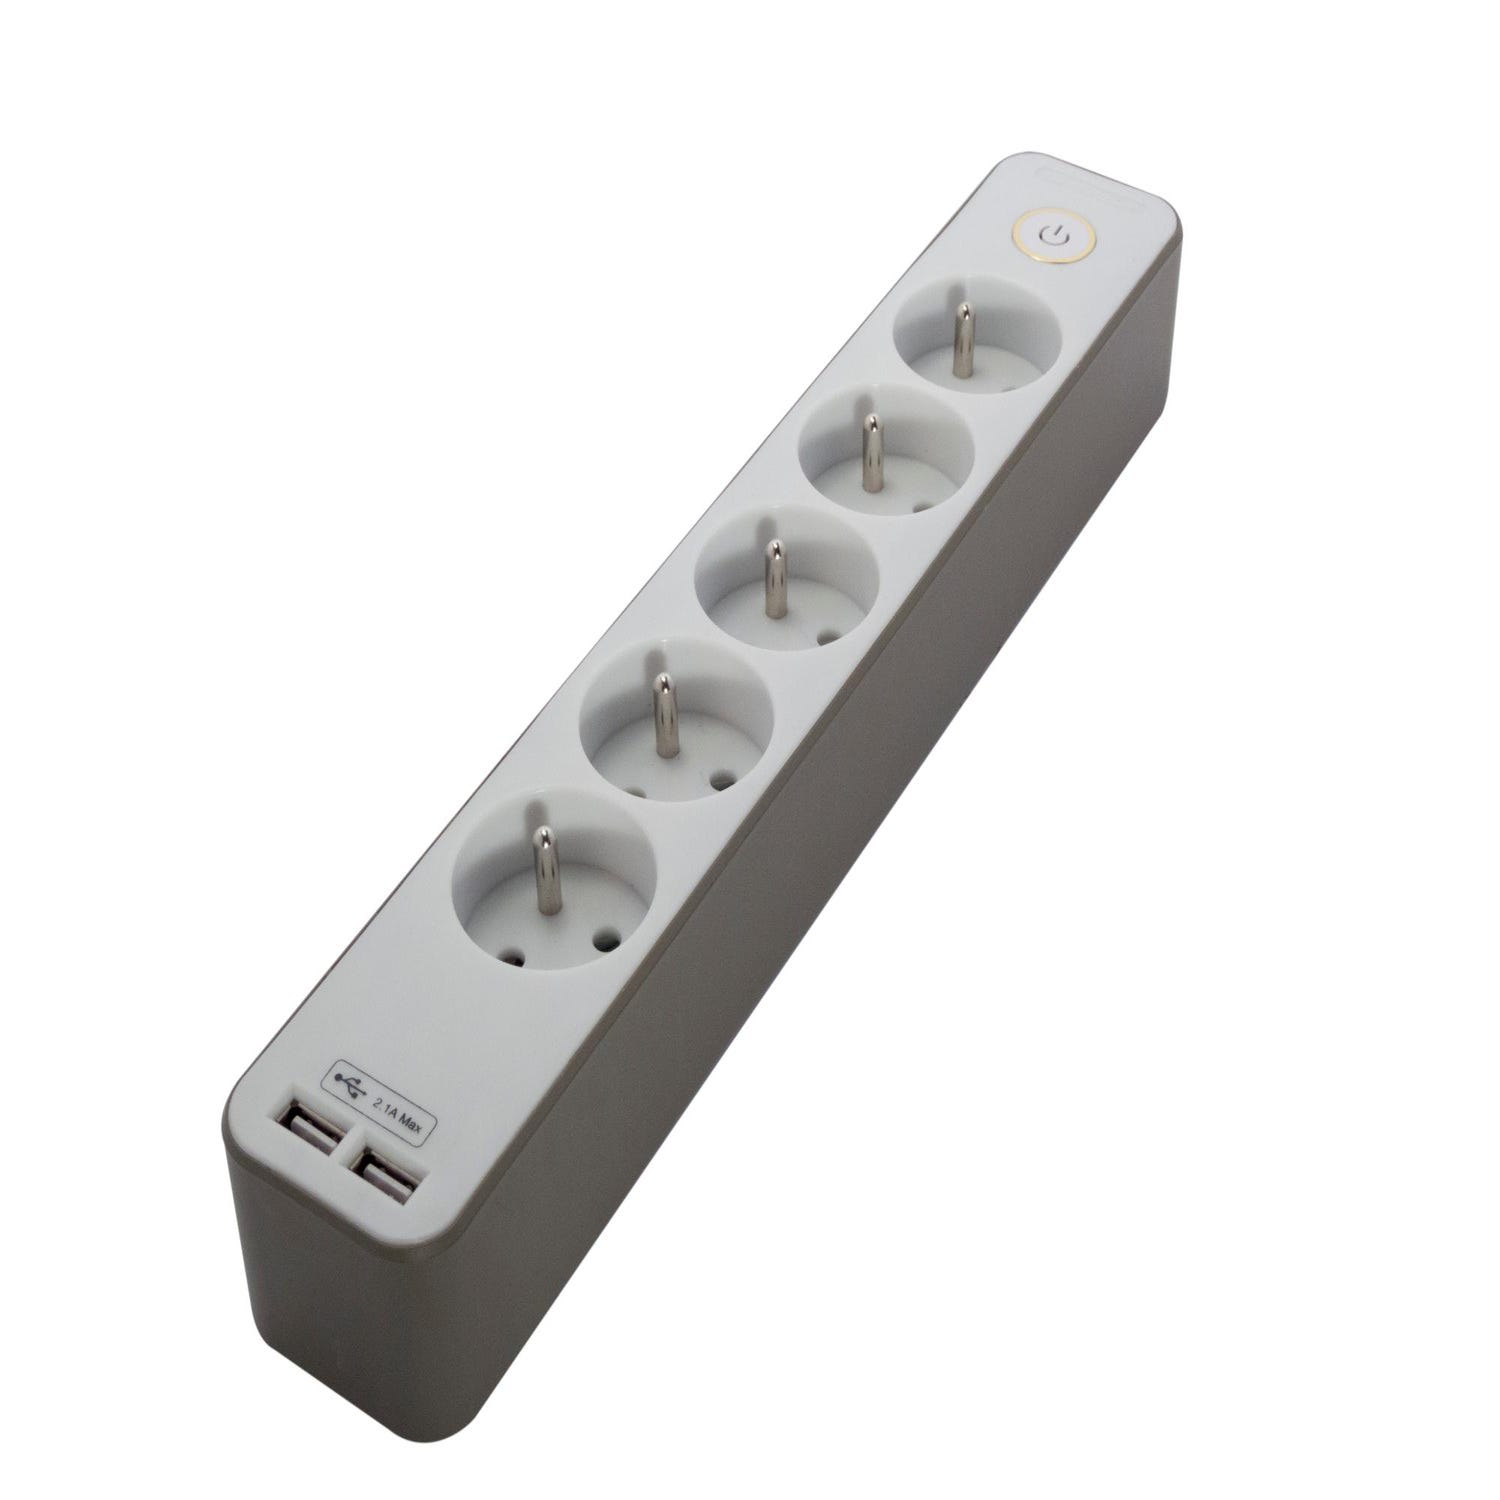 NTONPOWER Multiprise Electrique USB, Bloc Multiprise avec 3 Prises